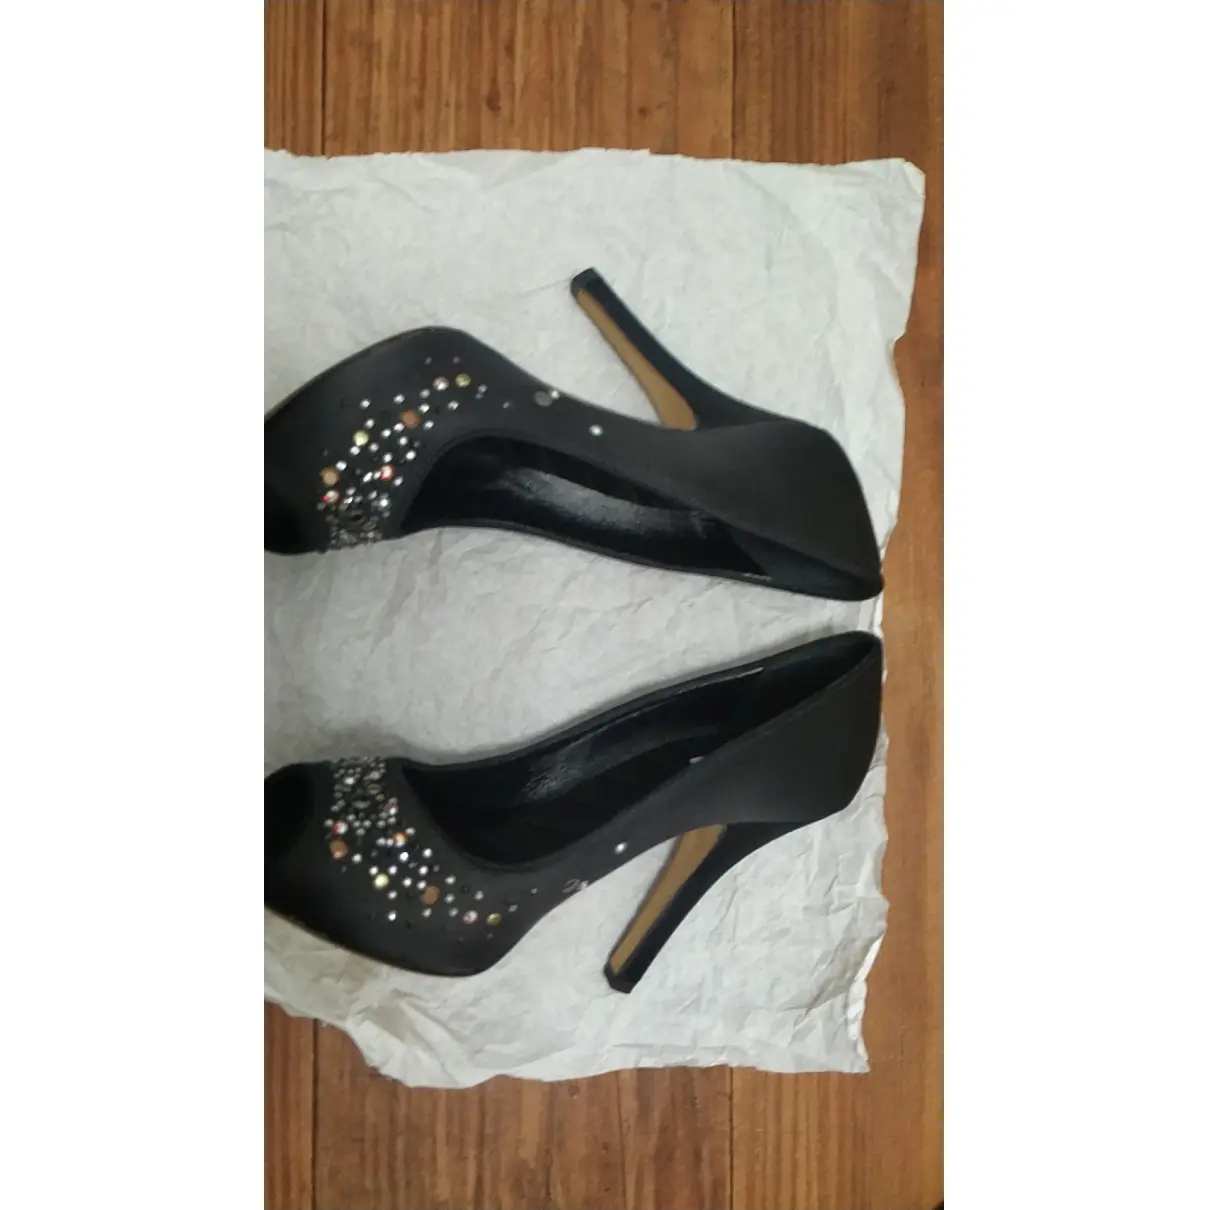 Glitter heels D&G